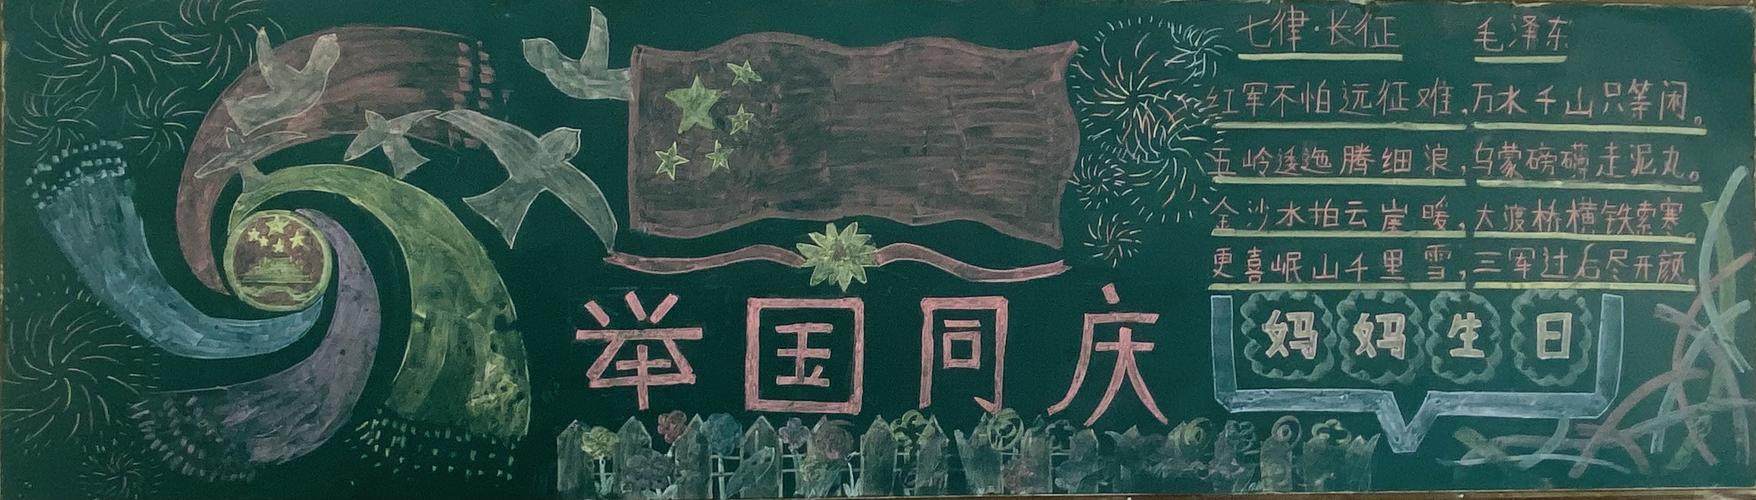 发挥自己的特长制作出一幅幅精美的黑板报作品 中国日新月异的变化